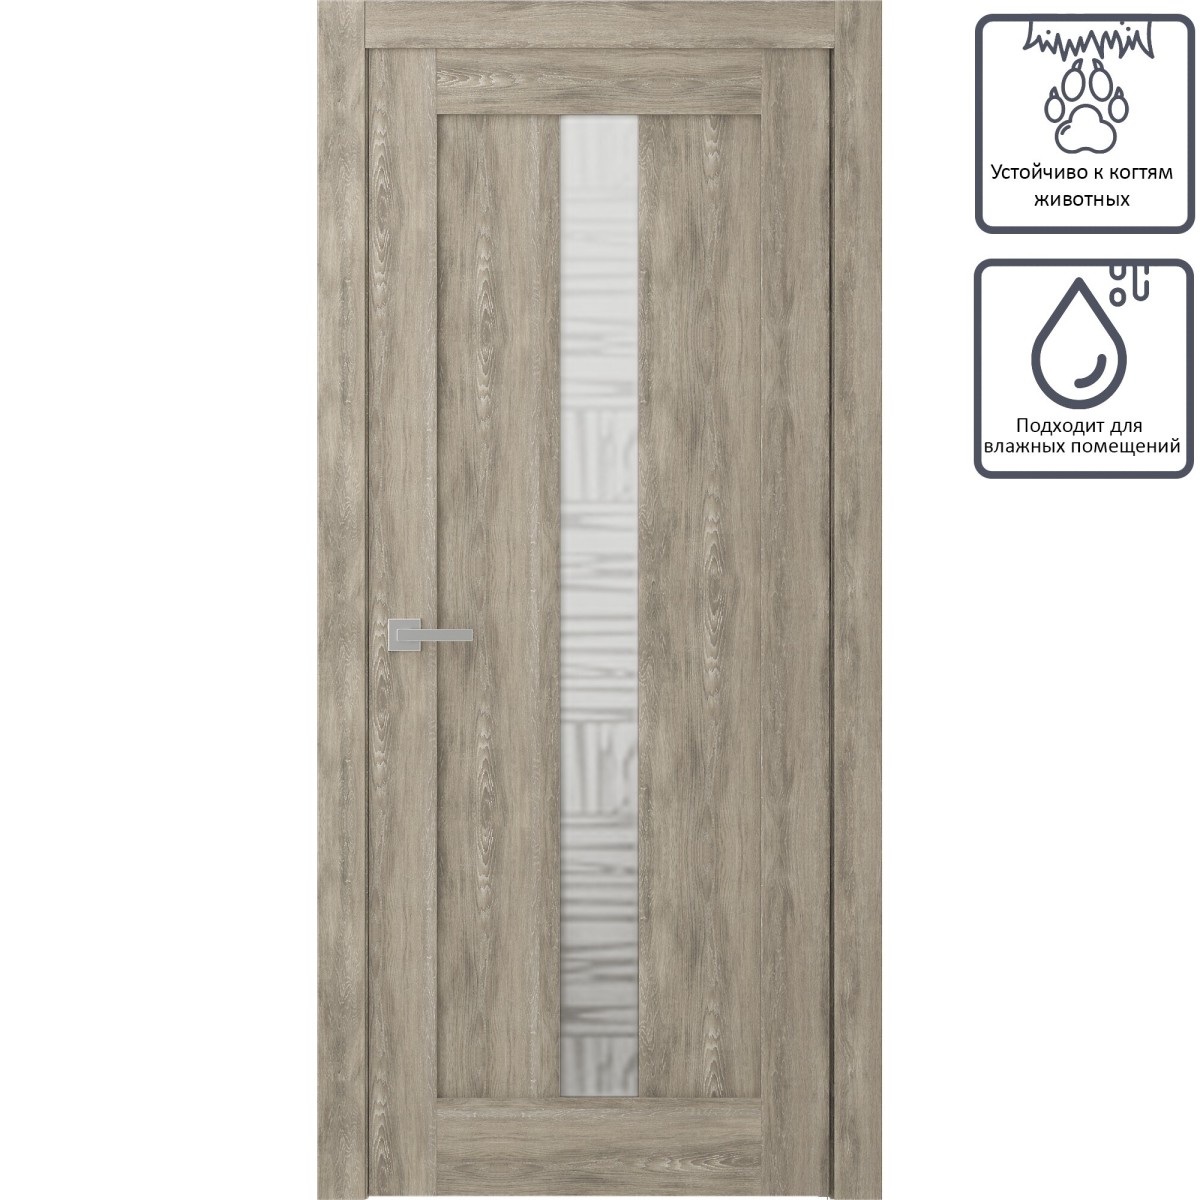 Дверь межкомнатная остеклённая Челси 70x200 см, экошпон, цвет дуб медовый